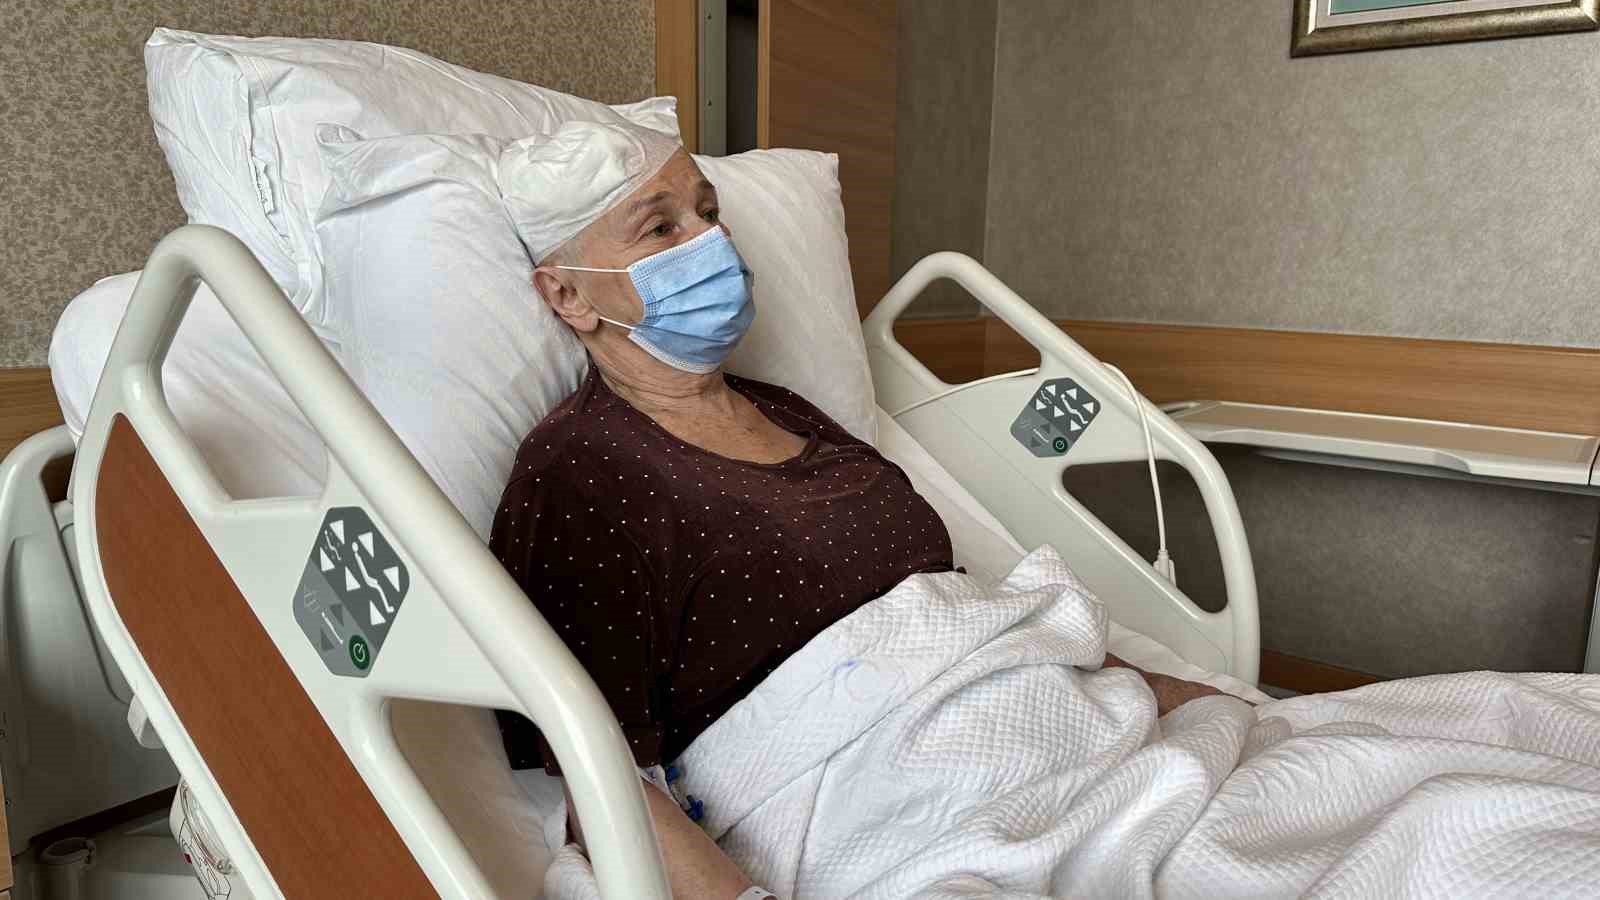 69 yaşındaki hastanın beyin ameliyatı genel anestezi olmadan gerçekleştirildi
